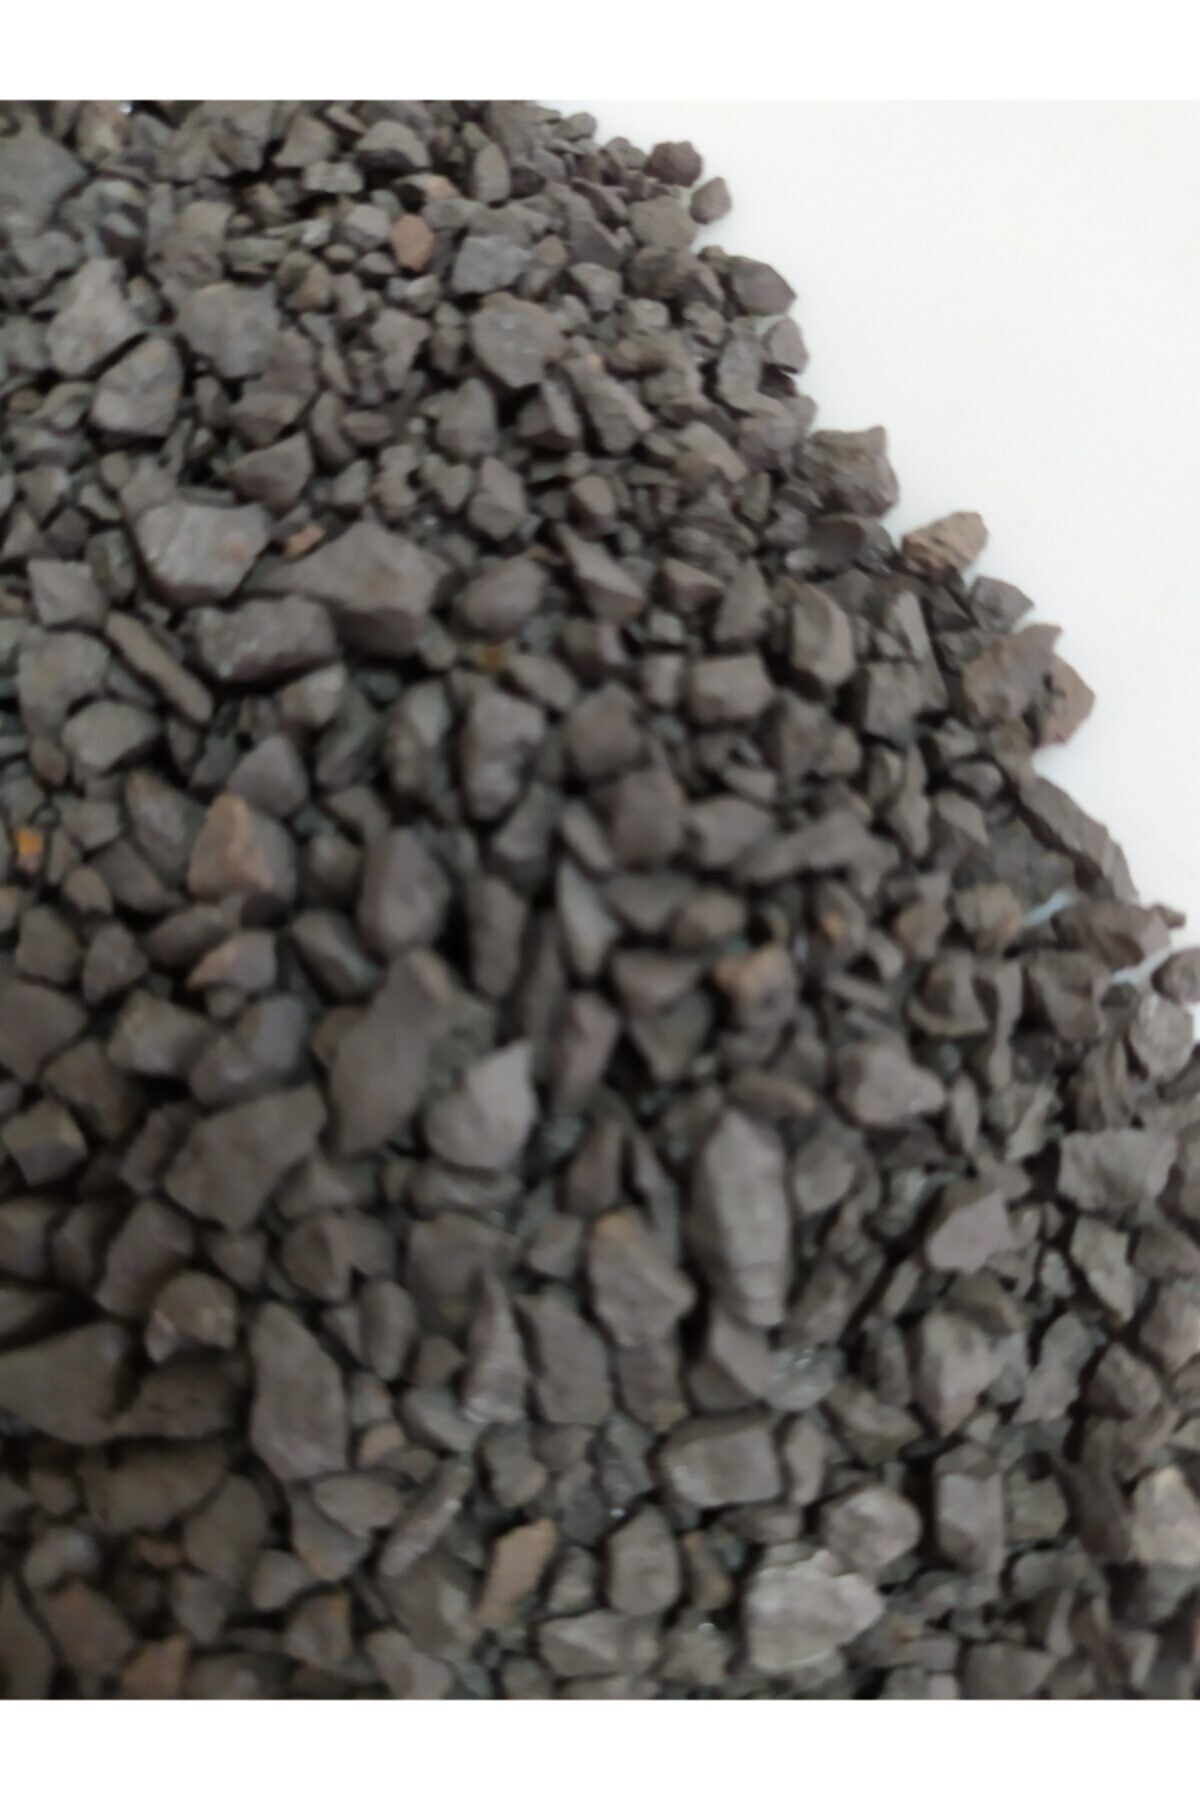 Pars Pro50 Demir Mangan Arsenik Arıtım Minerali 5kg